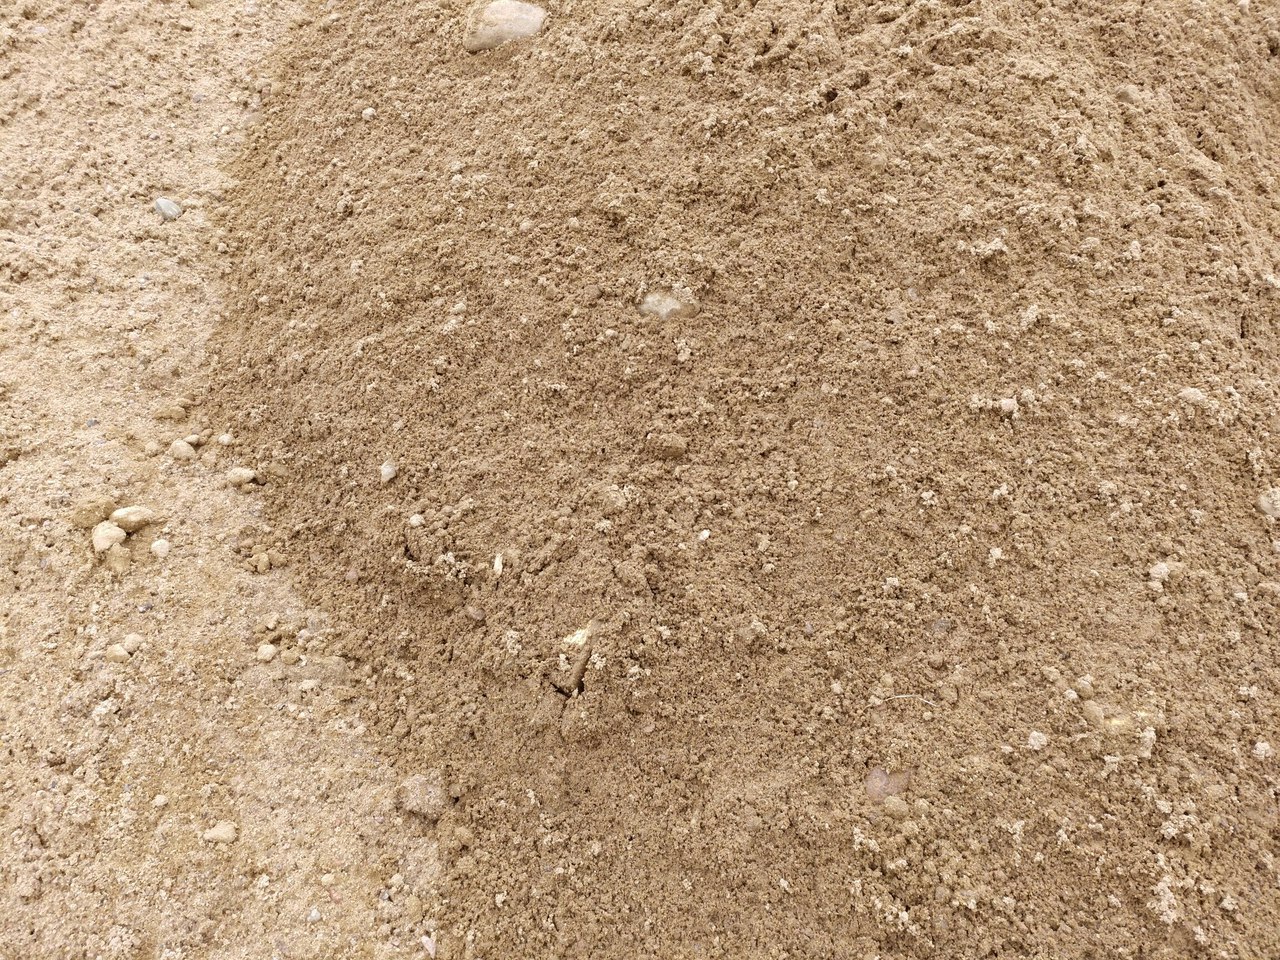 Карьерный крупный песок. Стоимость за кубометр 550 рублей.